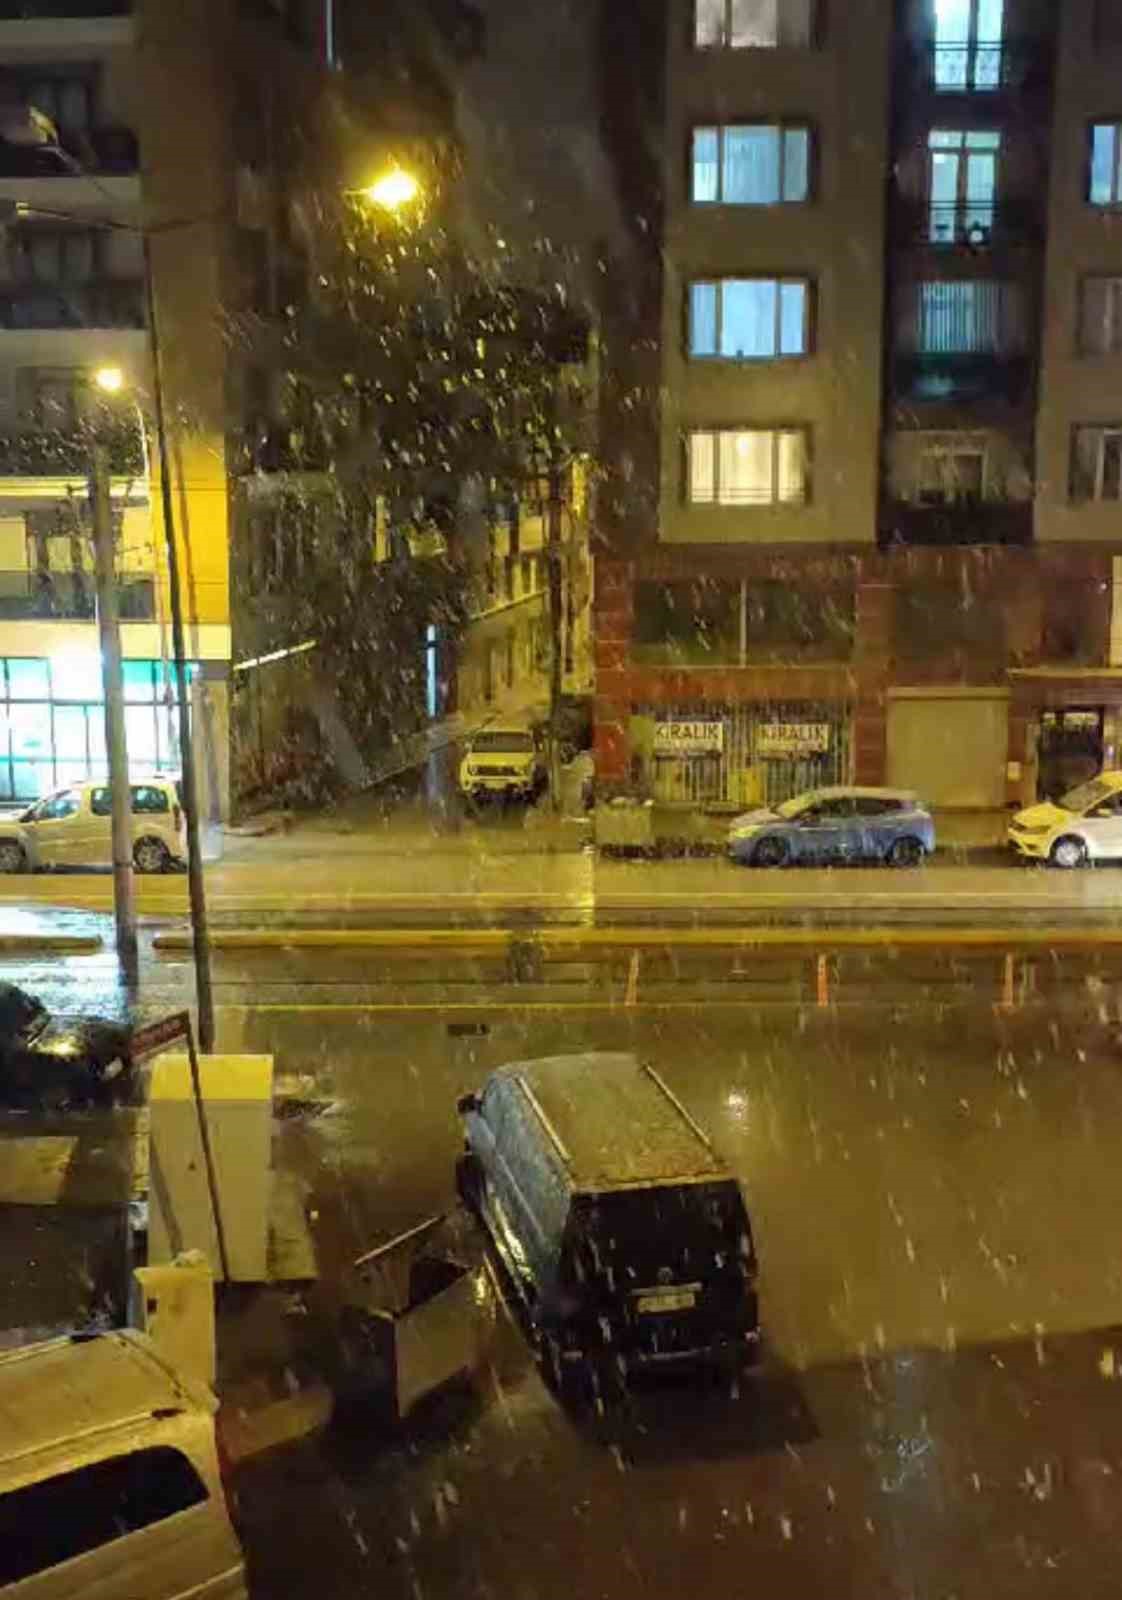 Eskişehir’de beklenen kar yağışı başladı